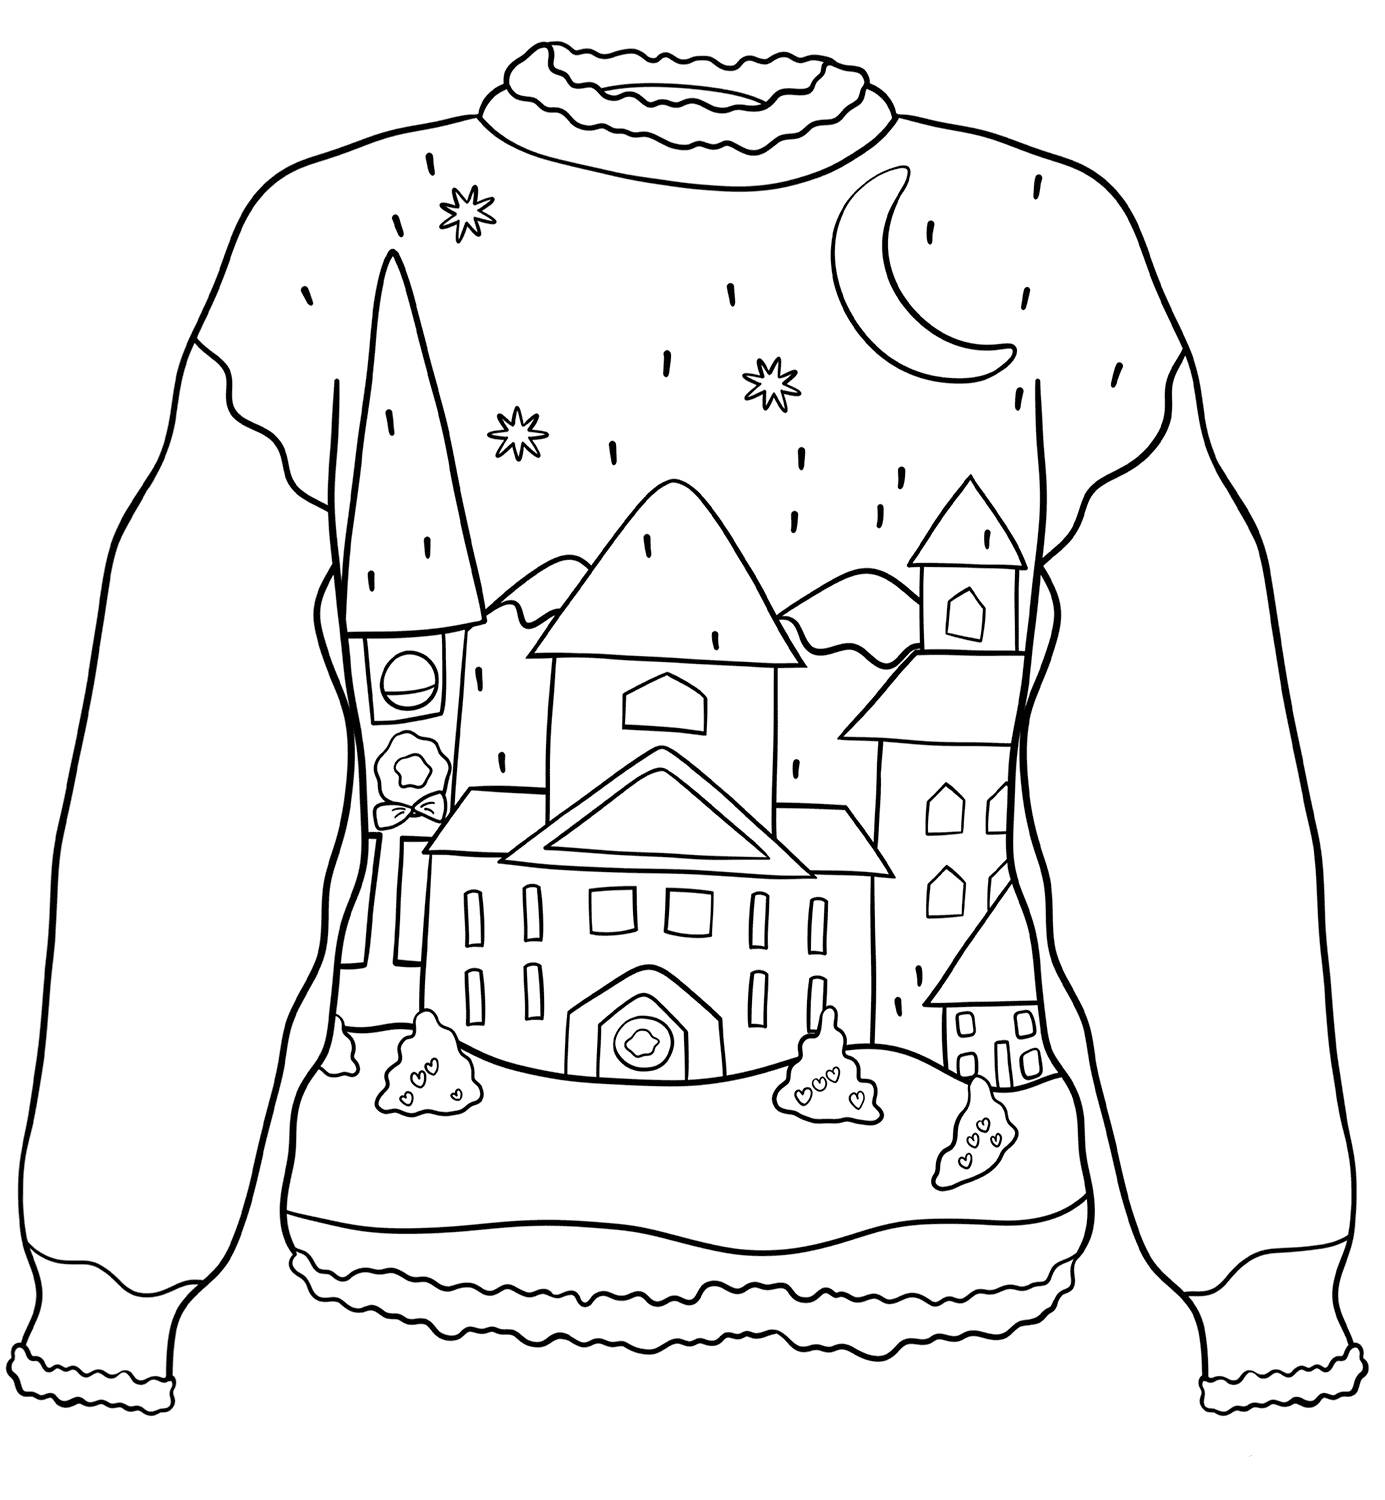 Креативная раскраска свитера для детей